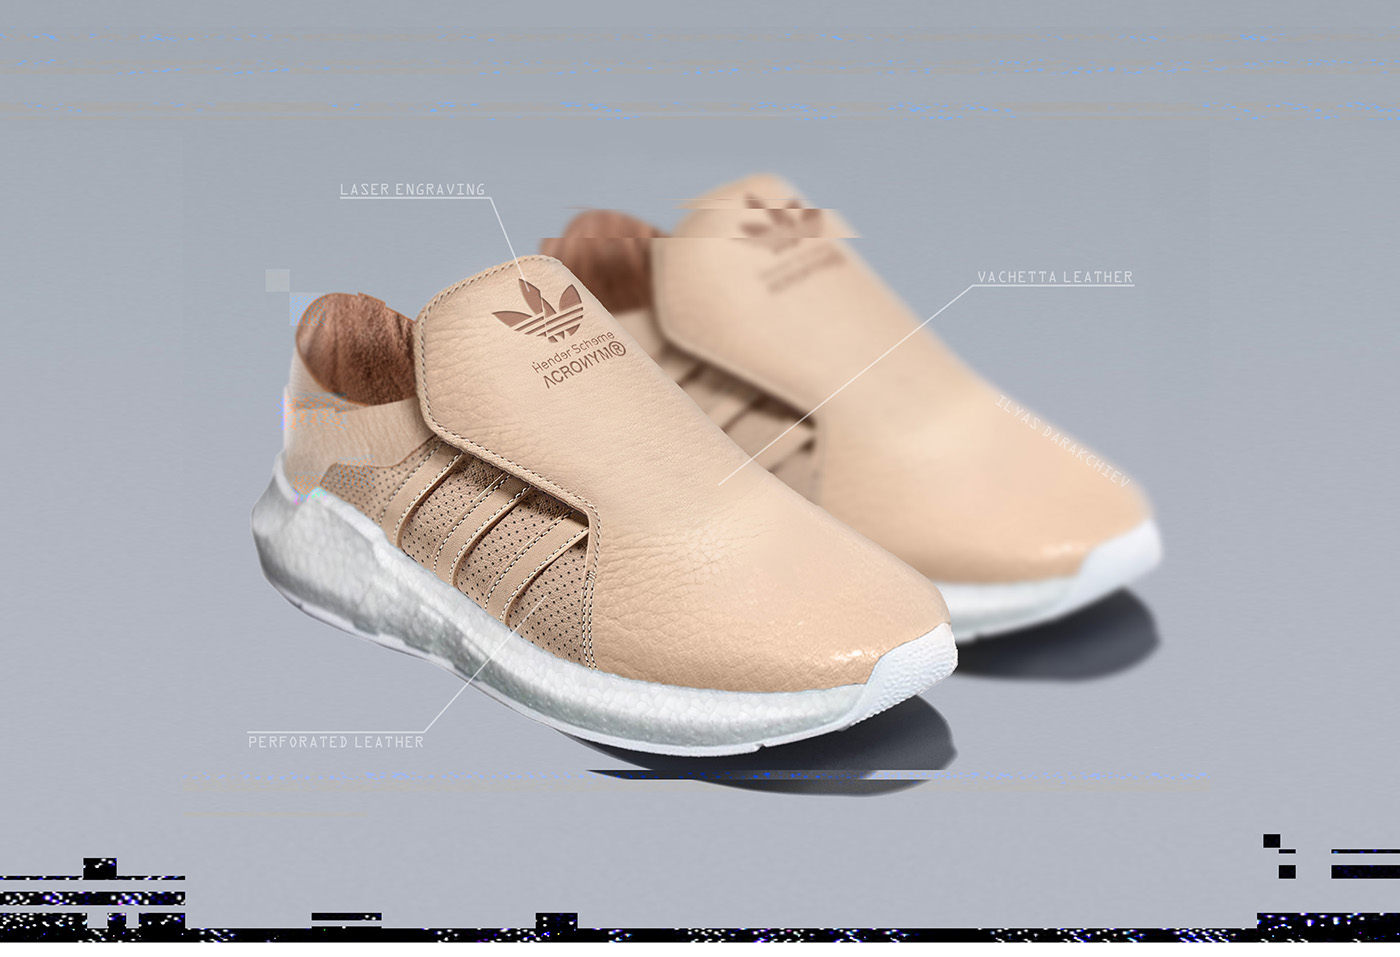 footwear sneakers adidas conceptkicks Acronym henderscheme sneaker shoes